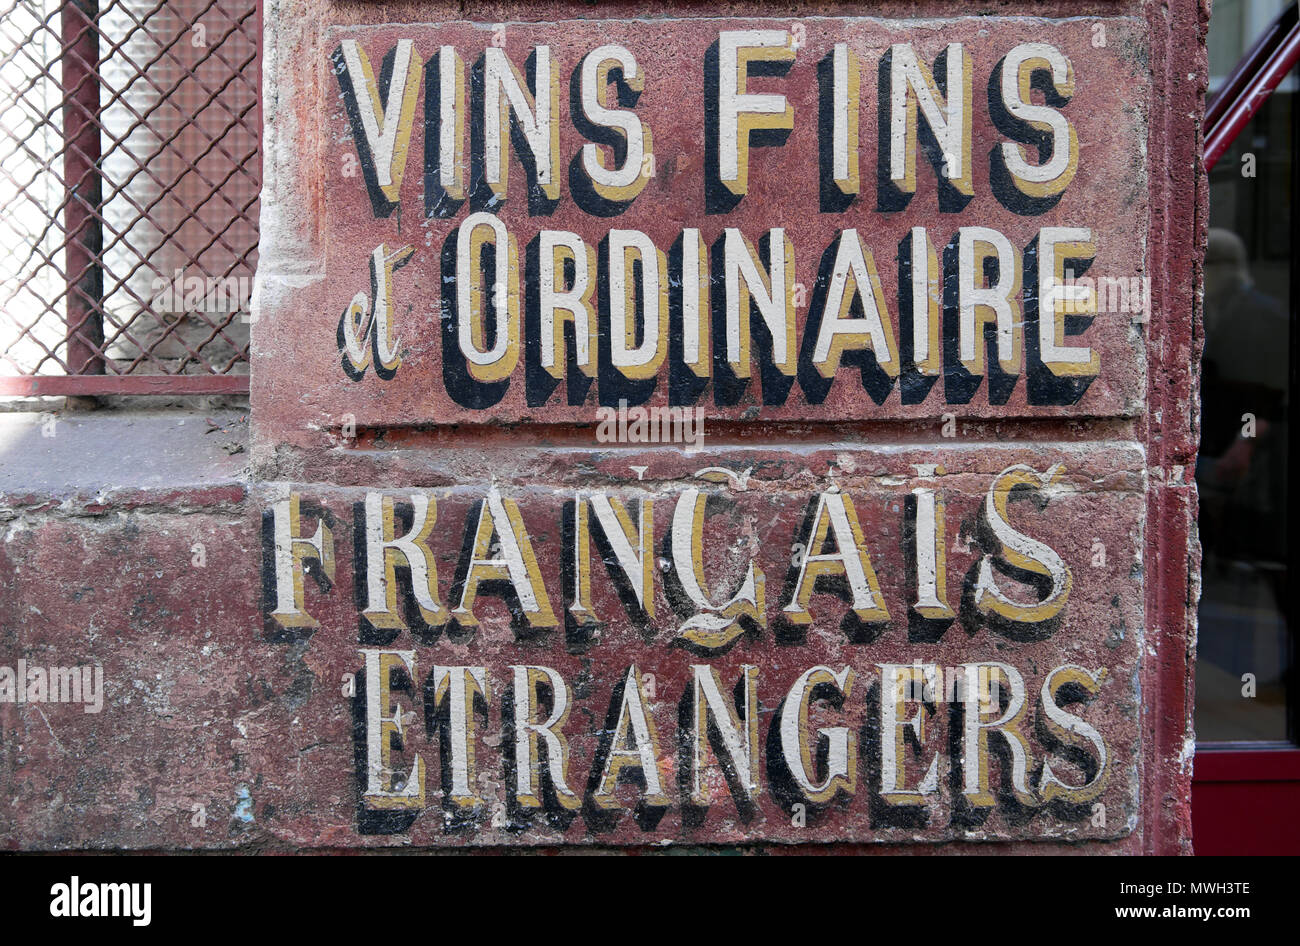 Vieux vin antique inscription en langue française sur le côté d'un immeuble "Vins Fins et ordinaire, Francais Etrangers' à Paris, France KATHY DEWITT Banque D'Images